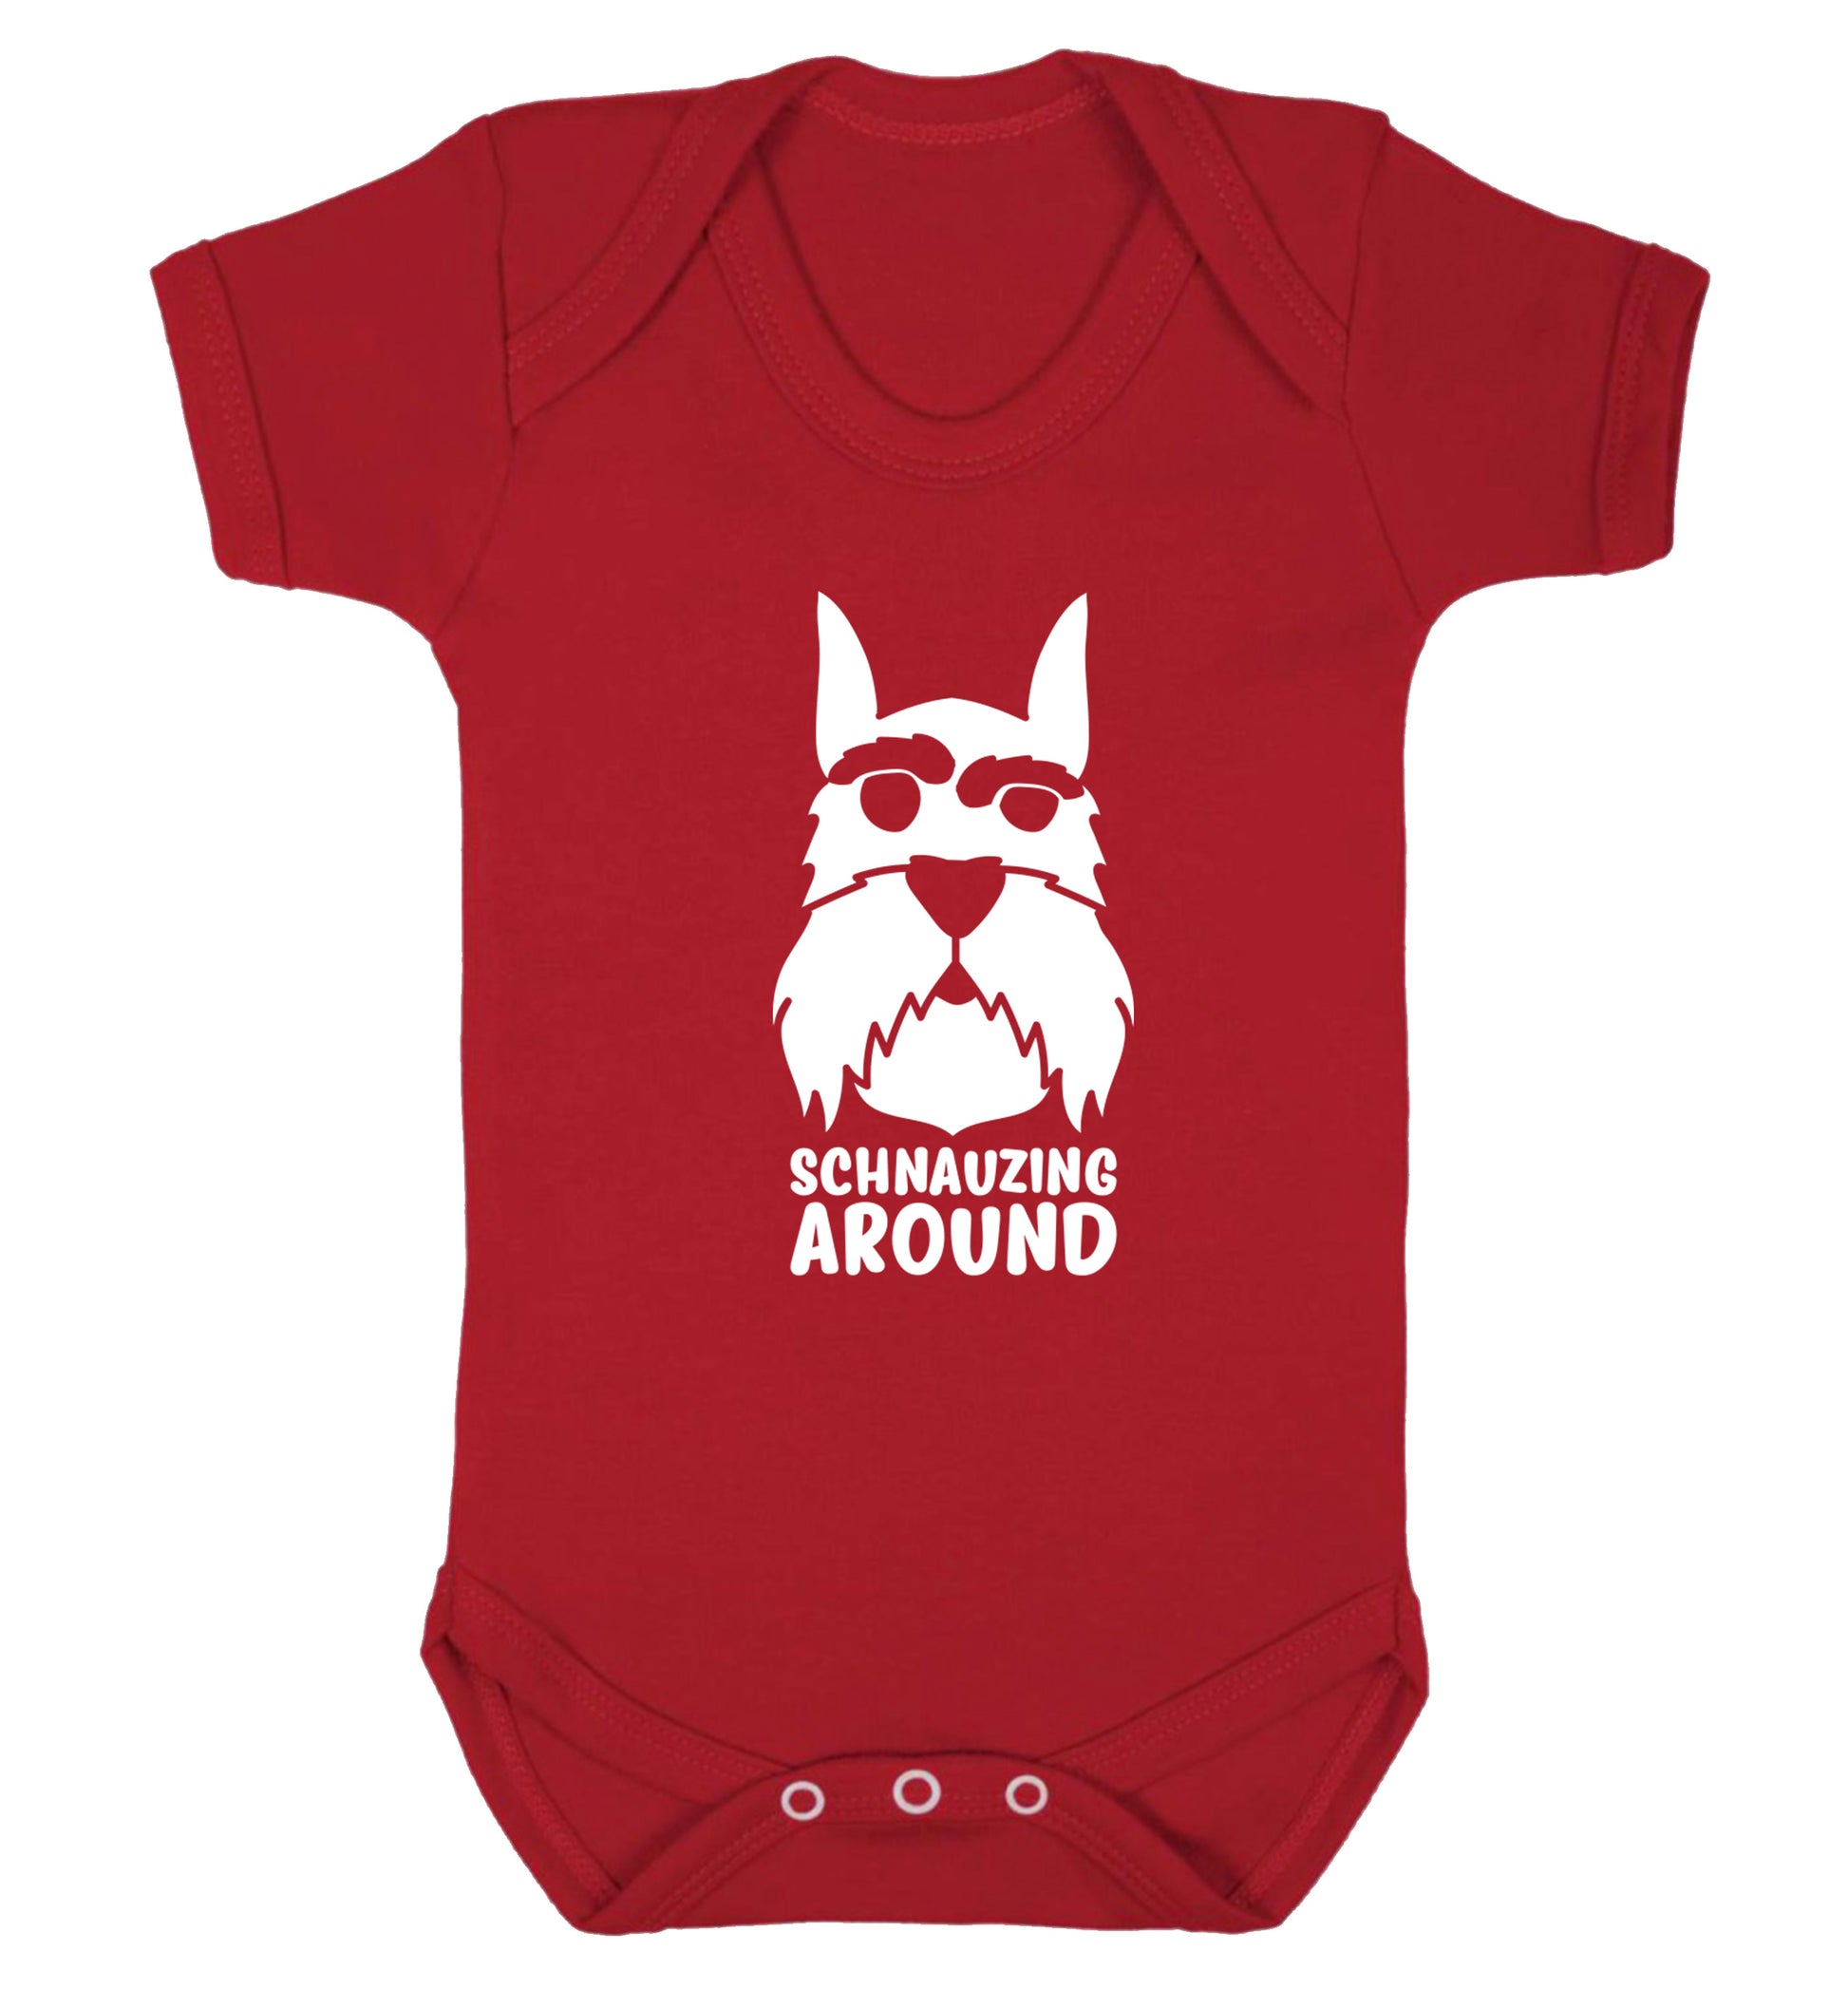 Schnauzing Around Baby Vest red 18-24 months